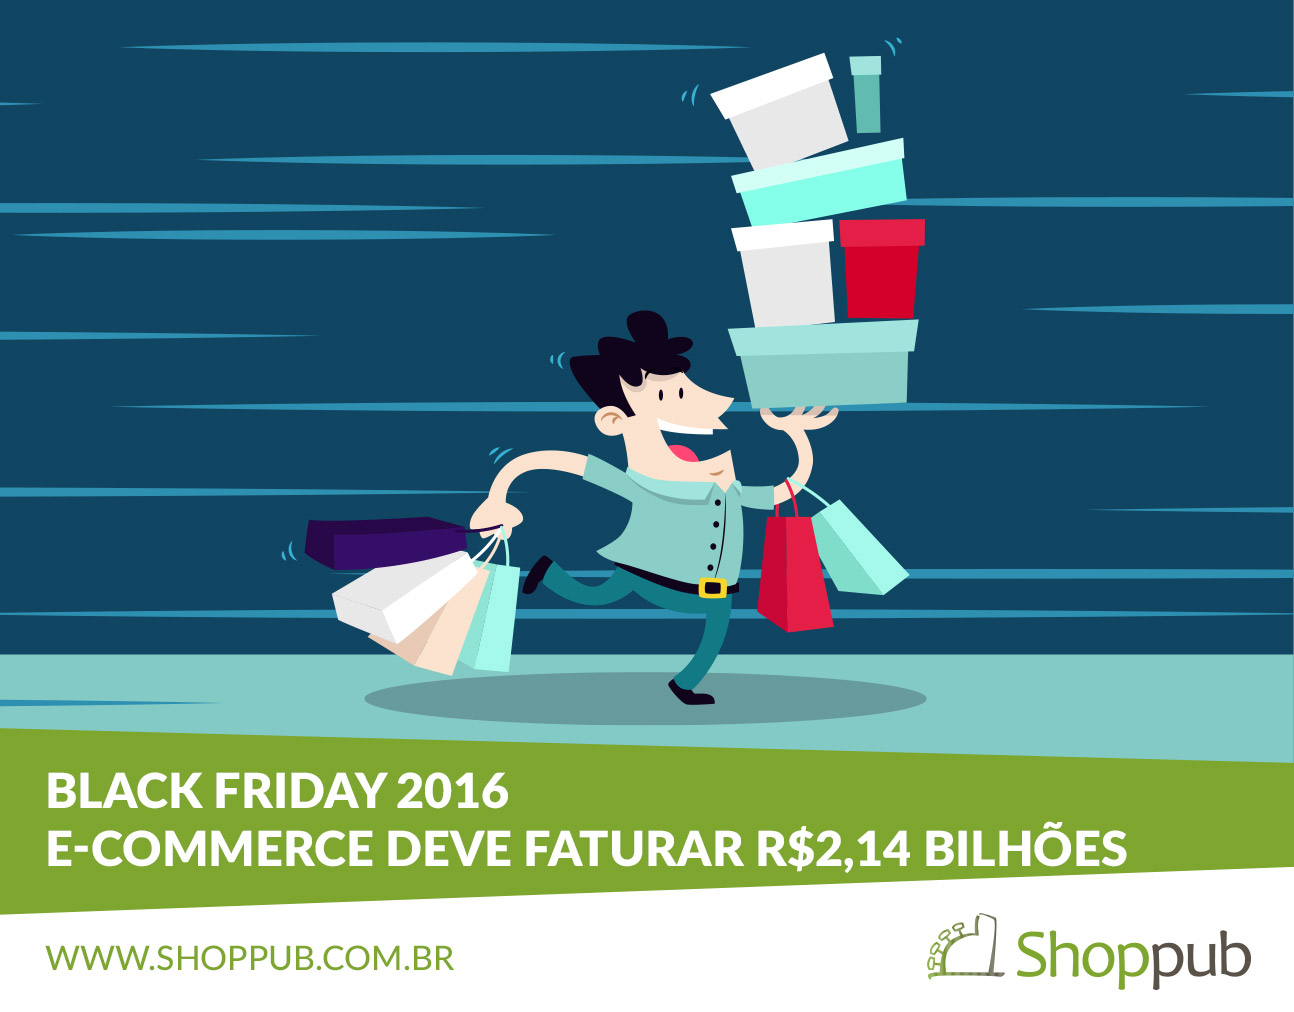 Black Friday 2016 – E-commerce deve faturar R$2,14 bilhões